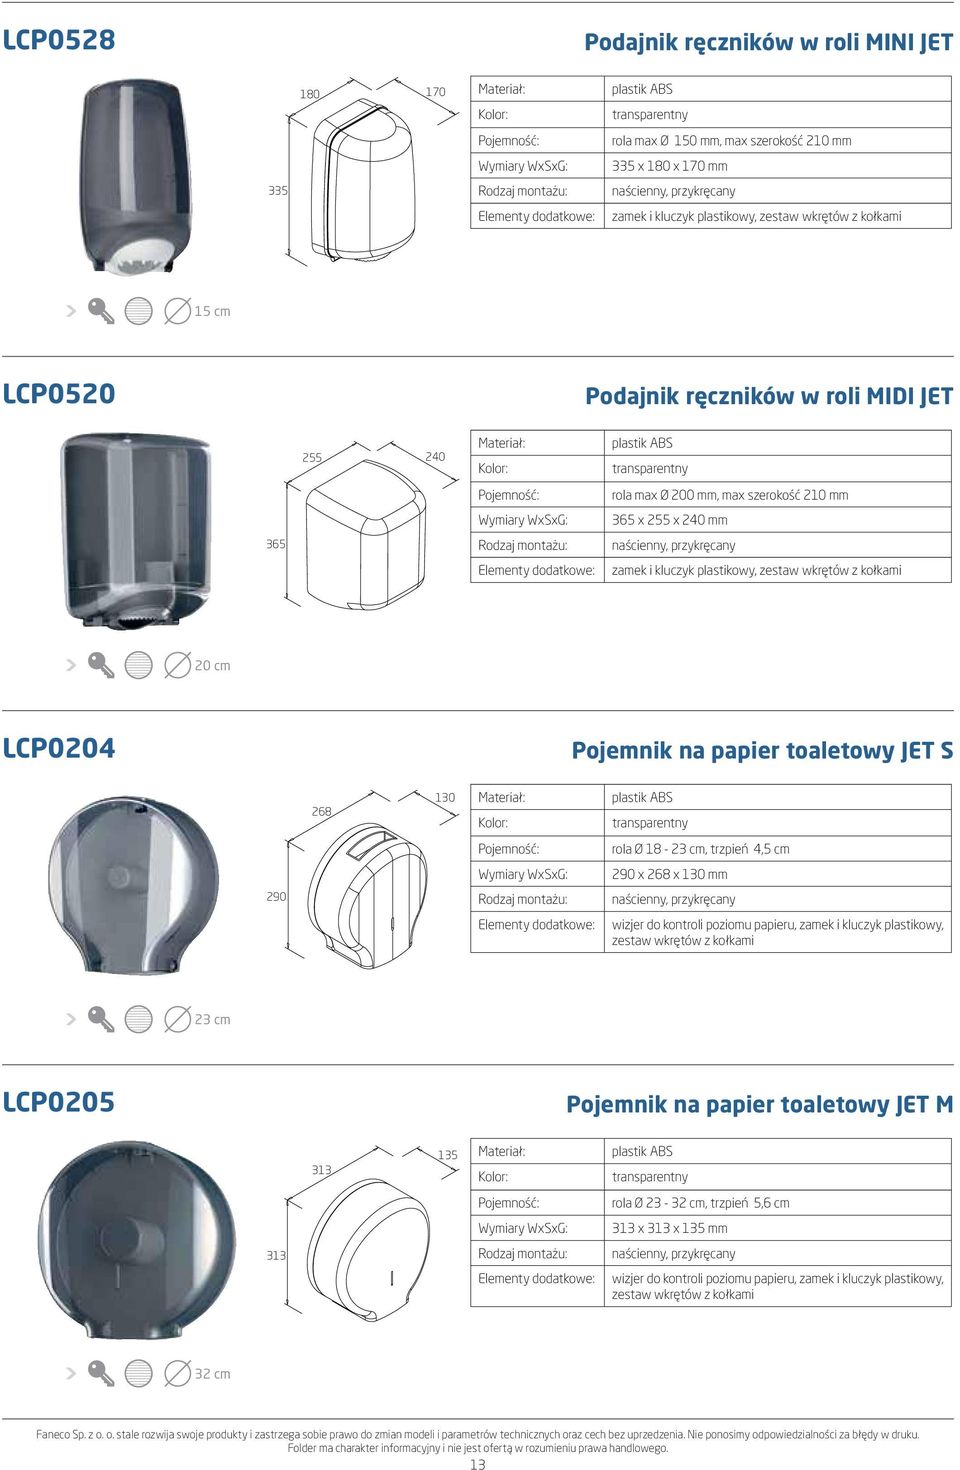 LCP0204 Pojemnik na papier toaletowy JET S 268 130 plastik ABS transparentny rola Ø 18-23 cm, trzpień 4,5 cm 290 x 268 x 130 mm 290 wizjer do kontroli poziomu papieru, zamek i kluczyk plastikowy,